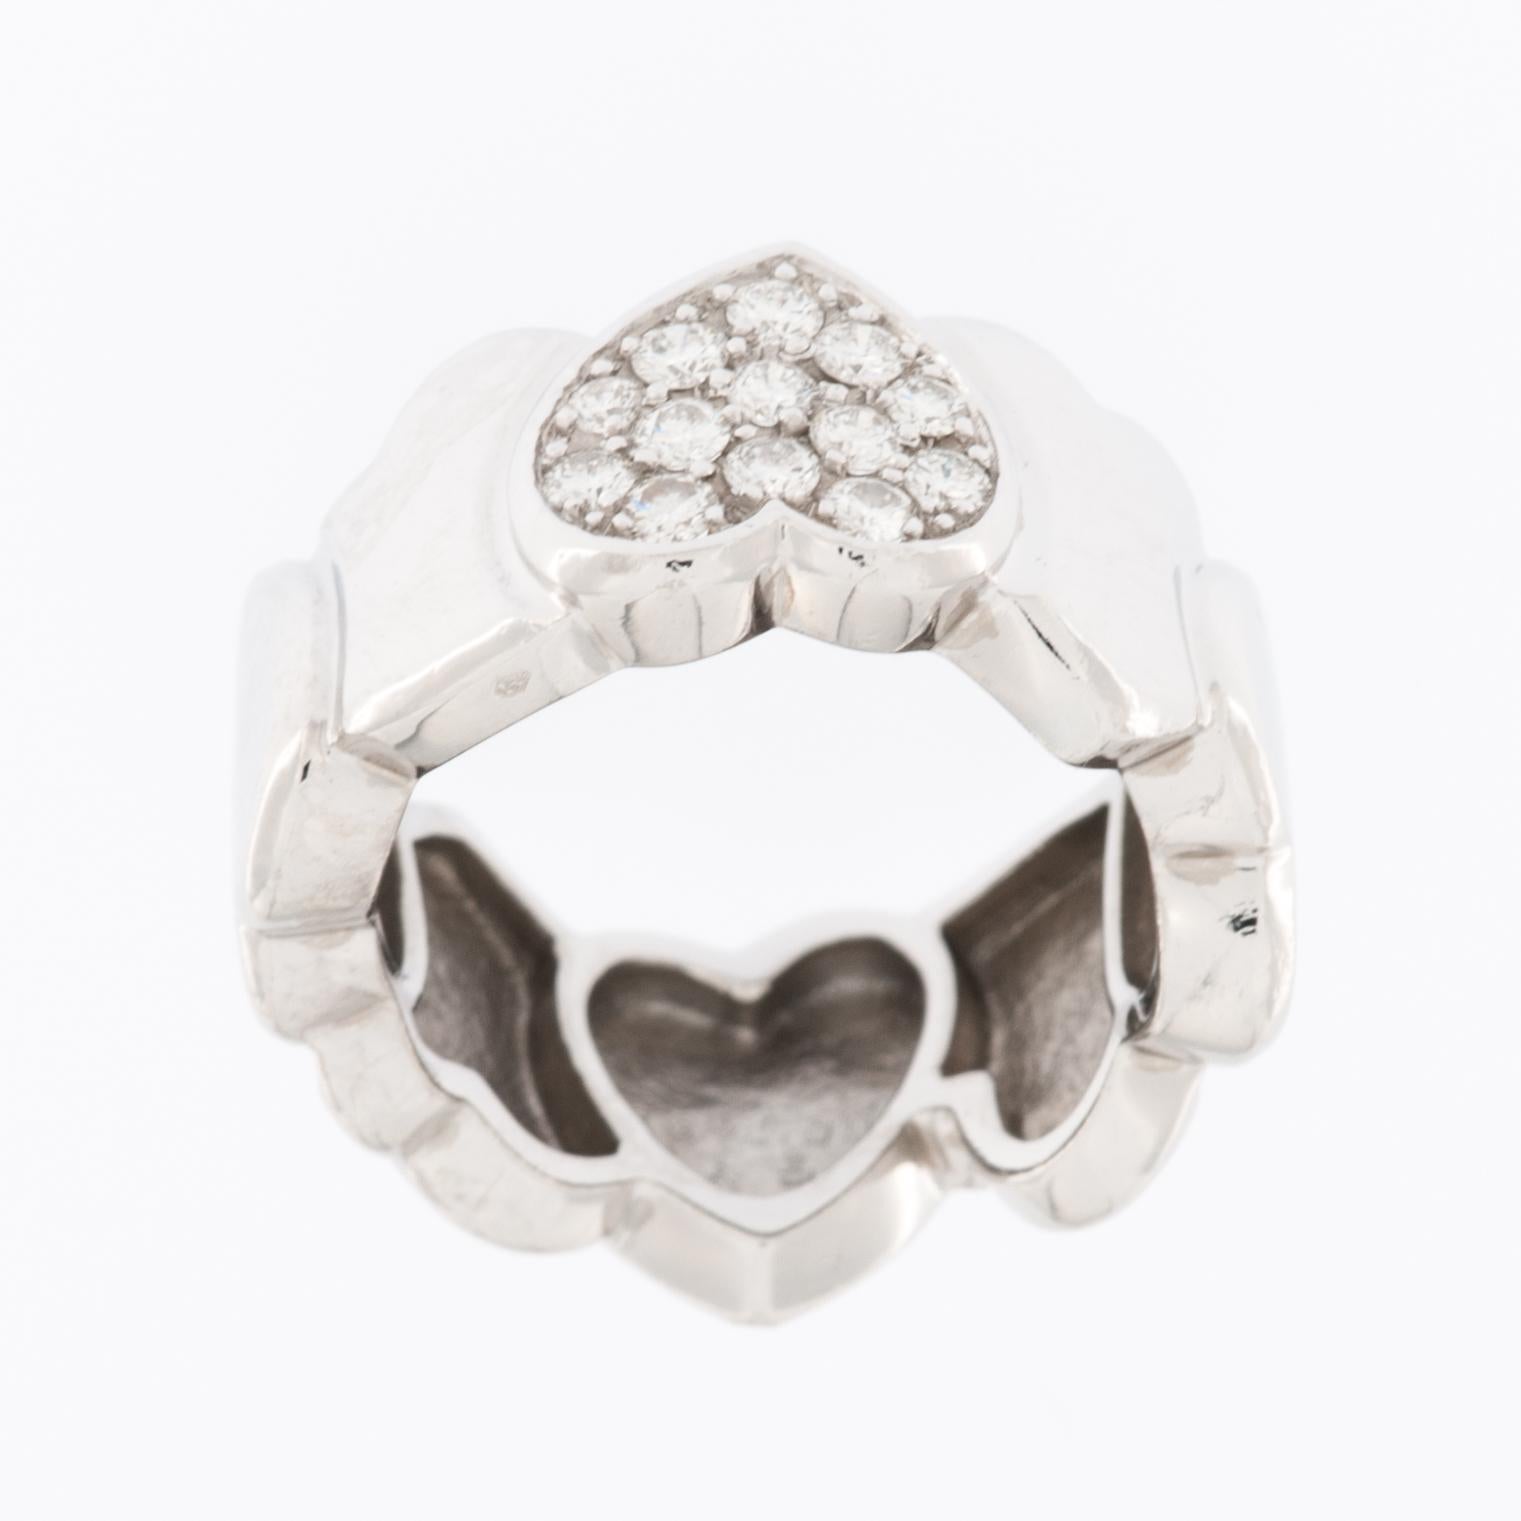 La bague à diamant en forme de cœur FRED PARIS est un bijou luxueux et exquis en or blanc 18 carats. Cette bague est conçue pour être un symbole d'amour et d'affection et est composée de 8 cœurs. 

La bague est fabriquée en or blanc 18 carats, qui